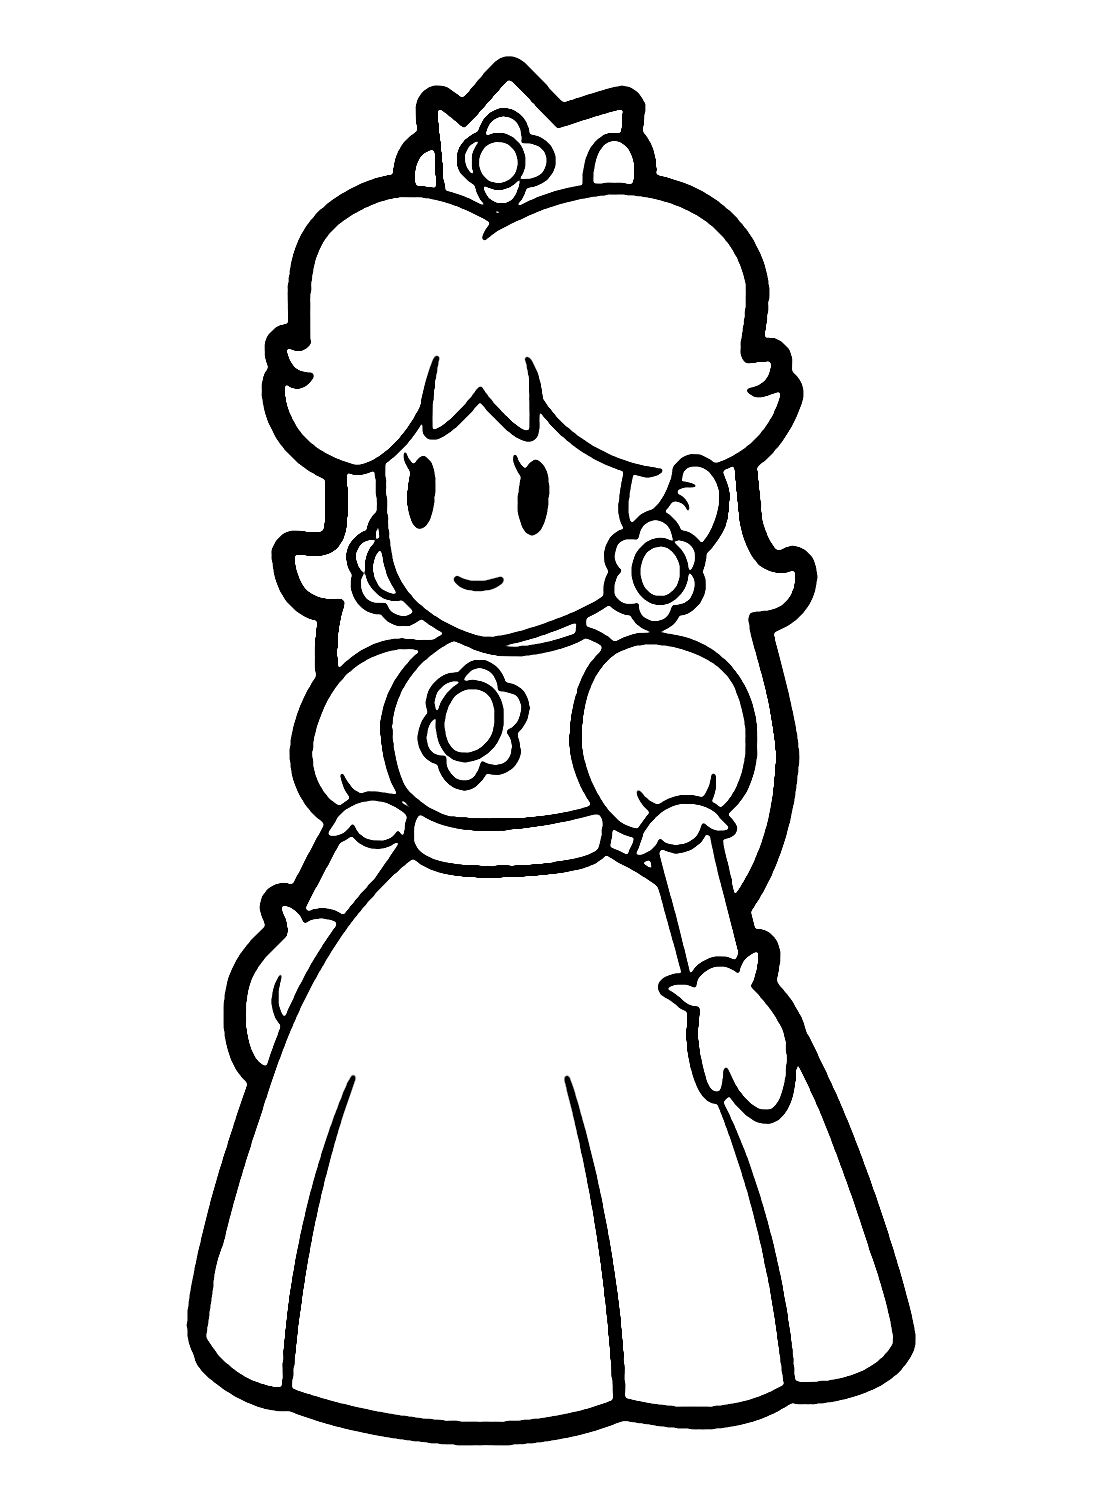 Mario Super Daisy Coloring Page